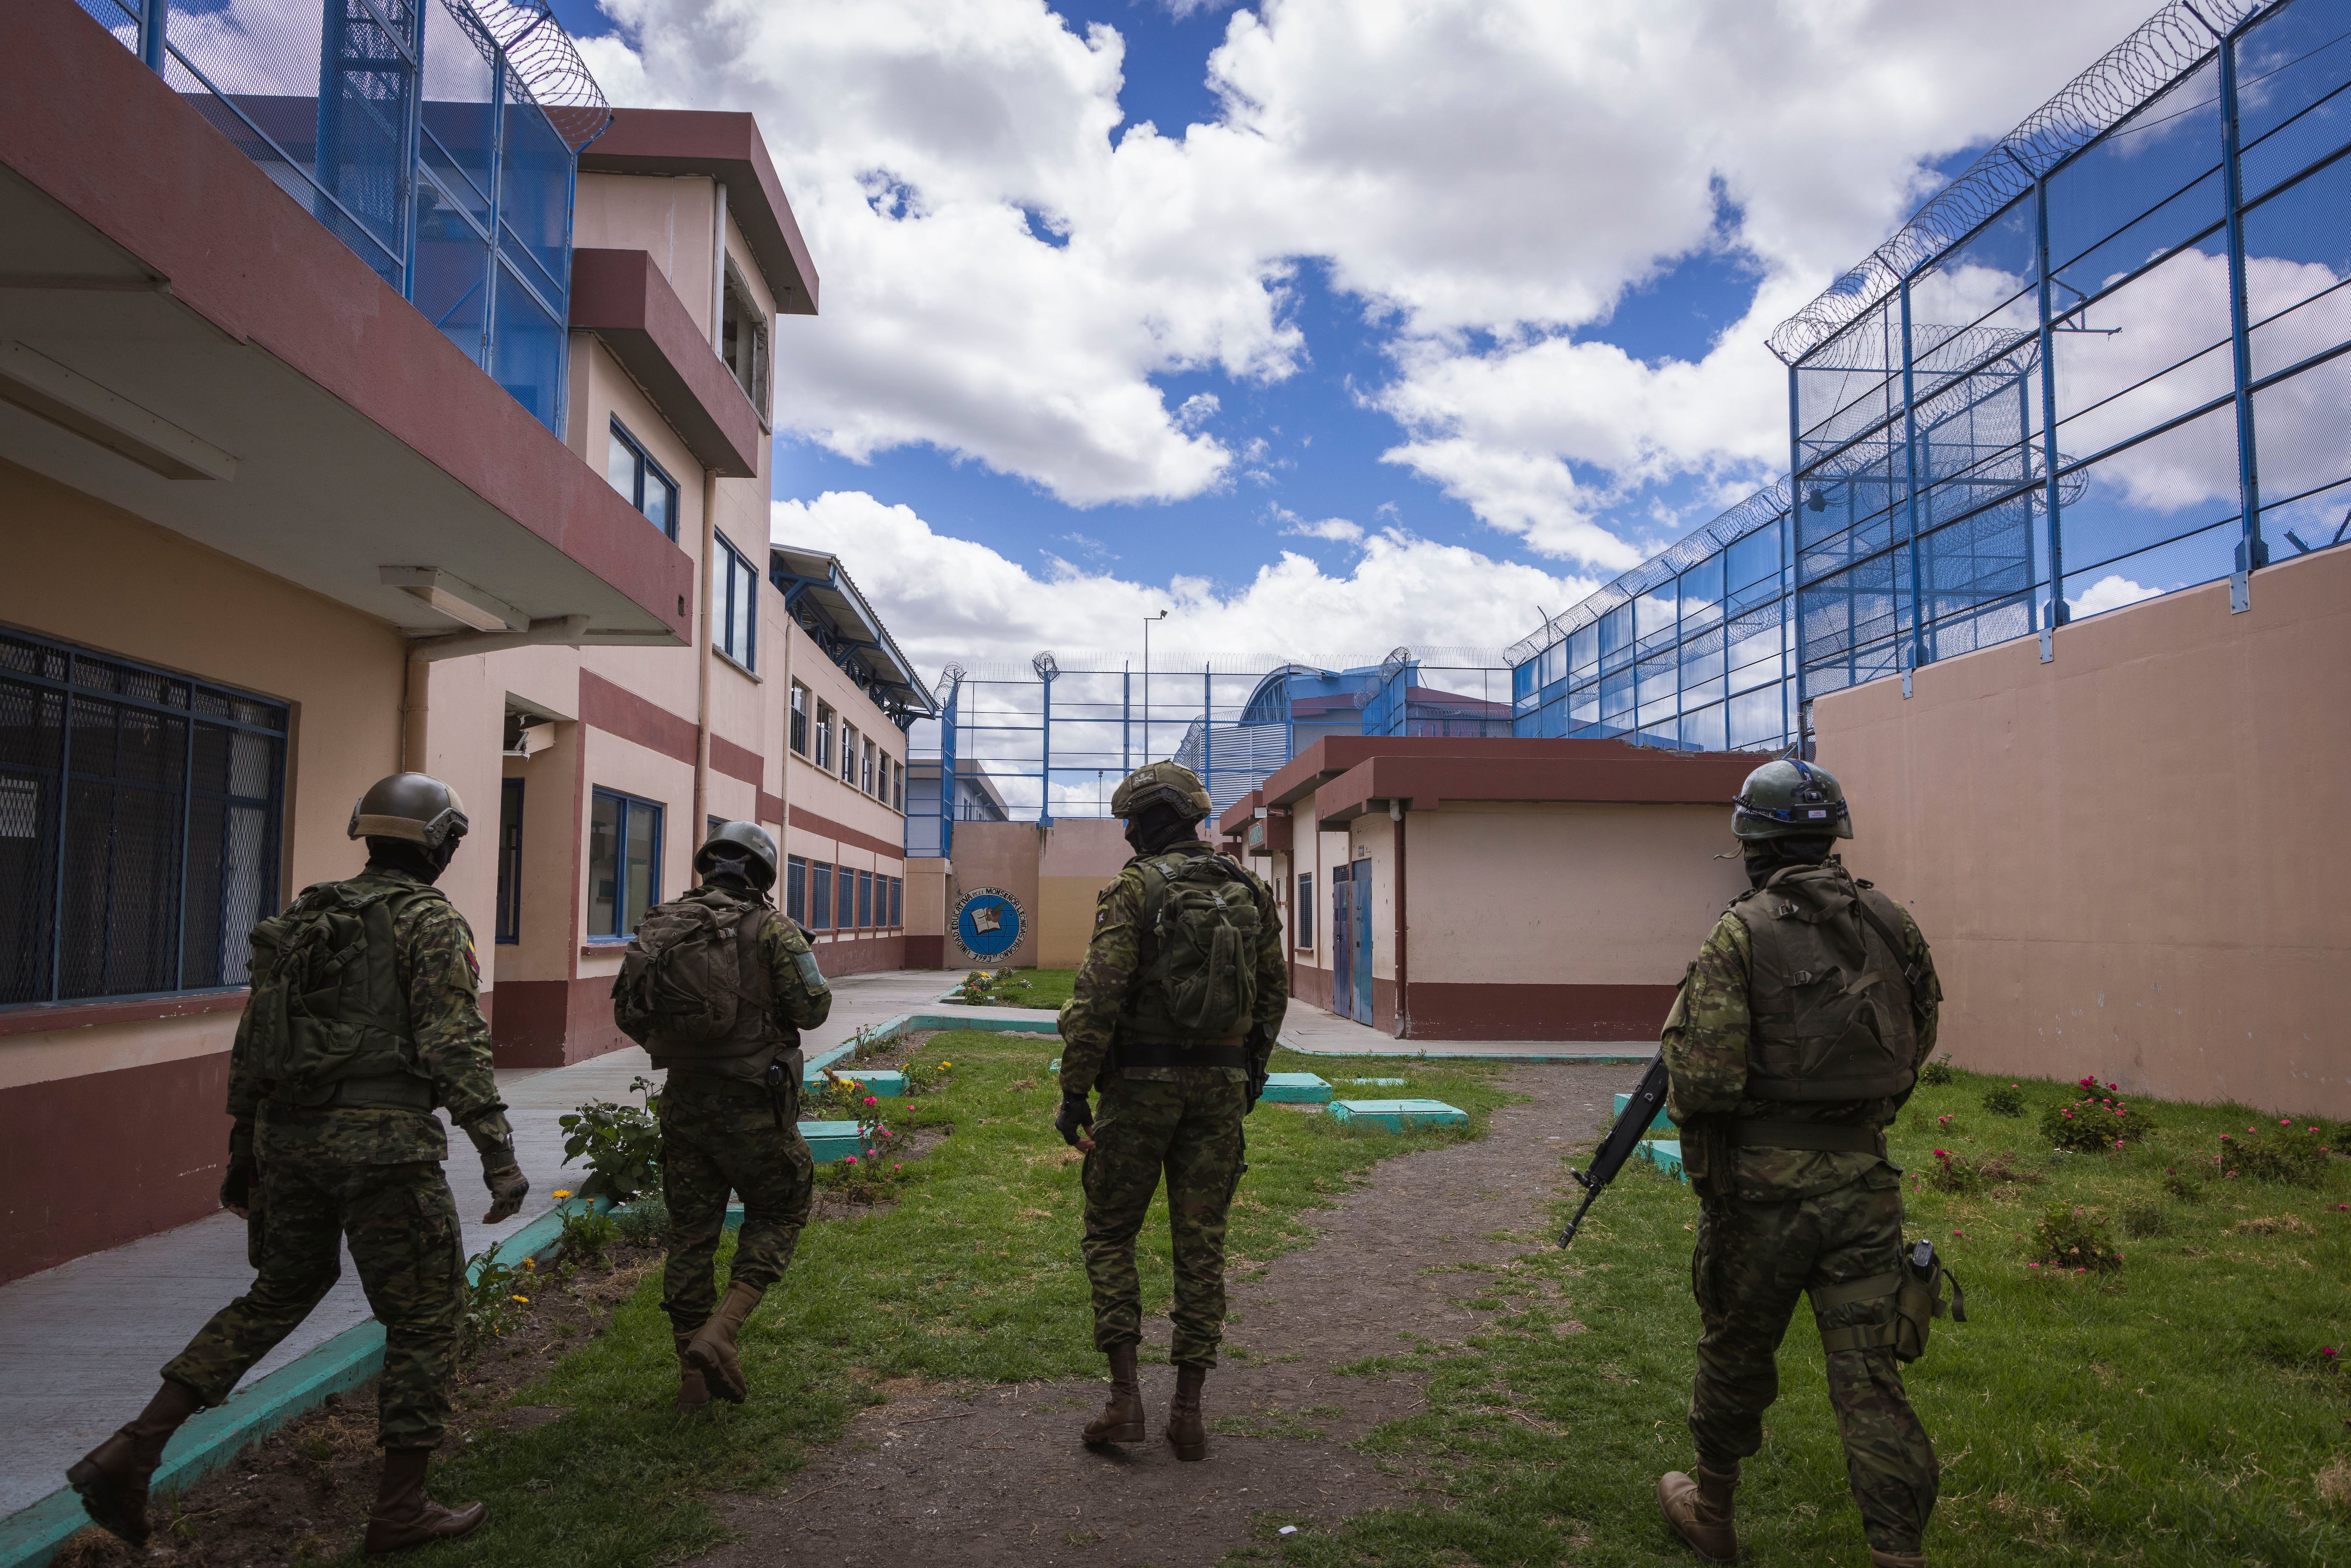 Human Rights Watch pide a Noboa poner fin al control militar en las prisiones por violaciones a los derechos humanos